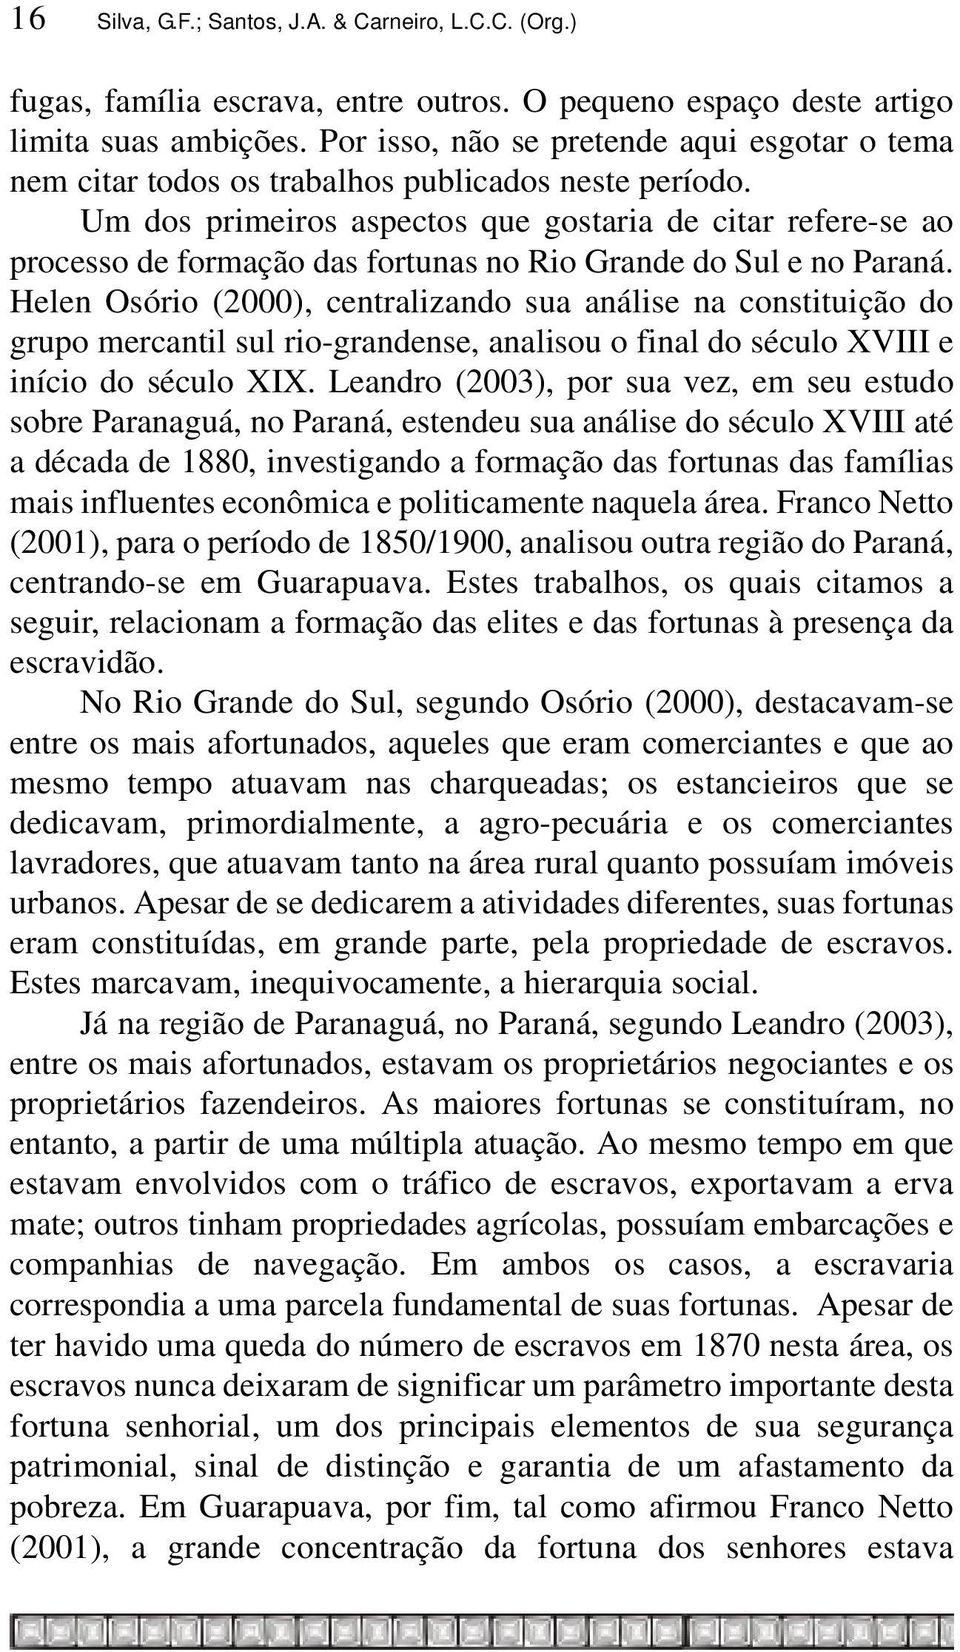 Um dos primeiros aspectos que gostaria de citar refere-se ao processo de formação das fortunas no Rio Grande do Sul e no Paraná.